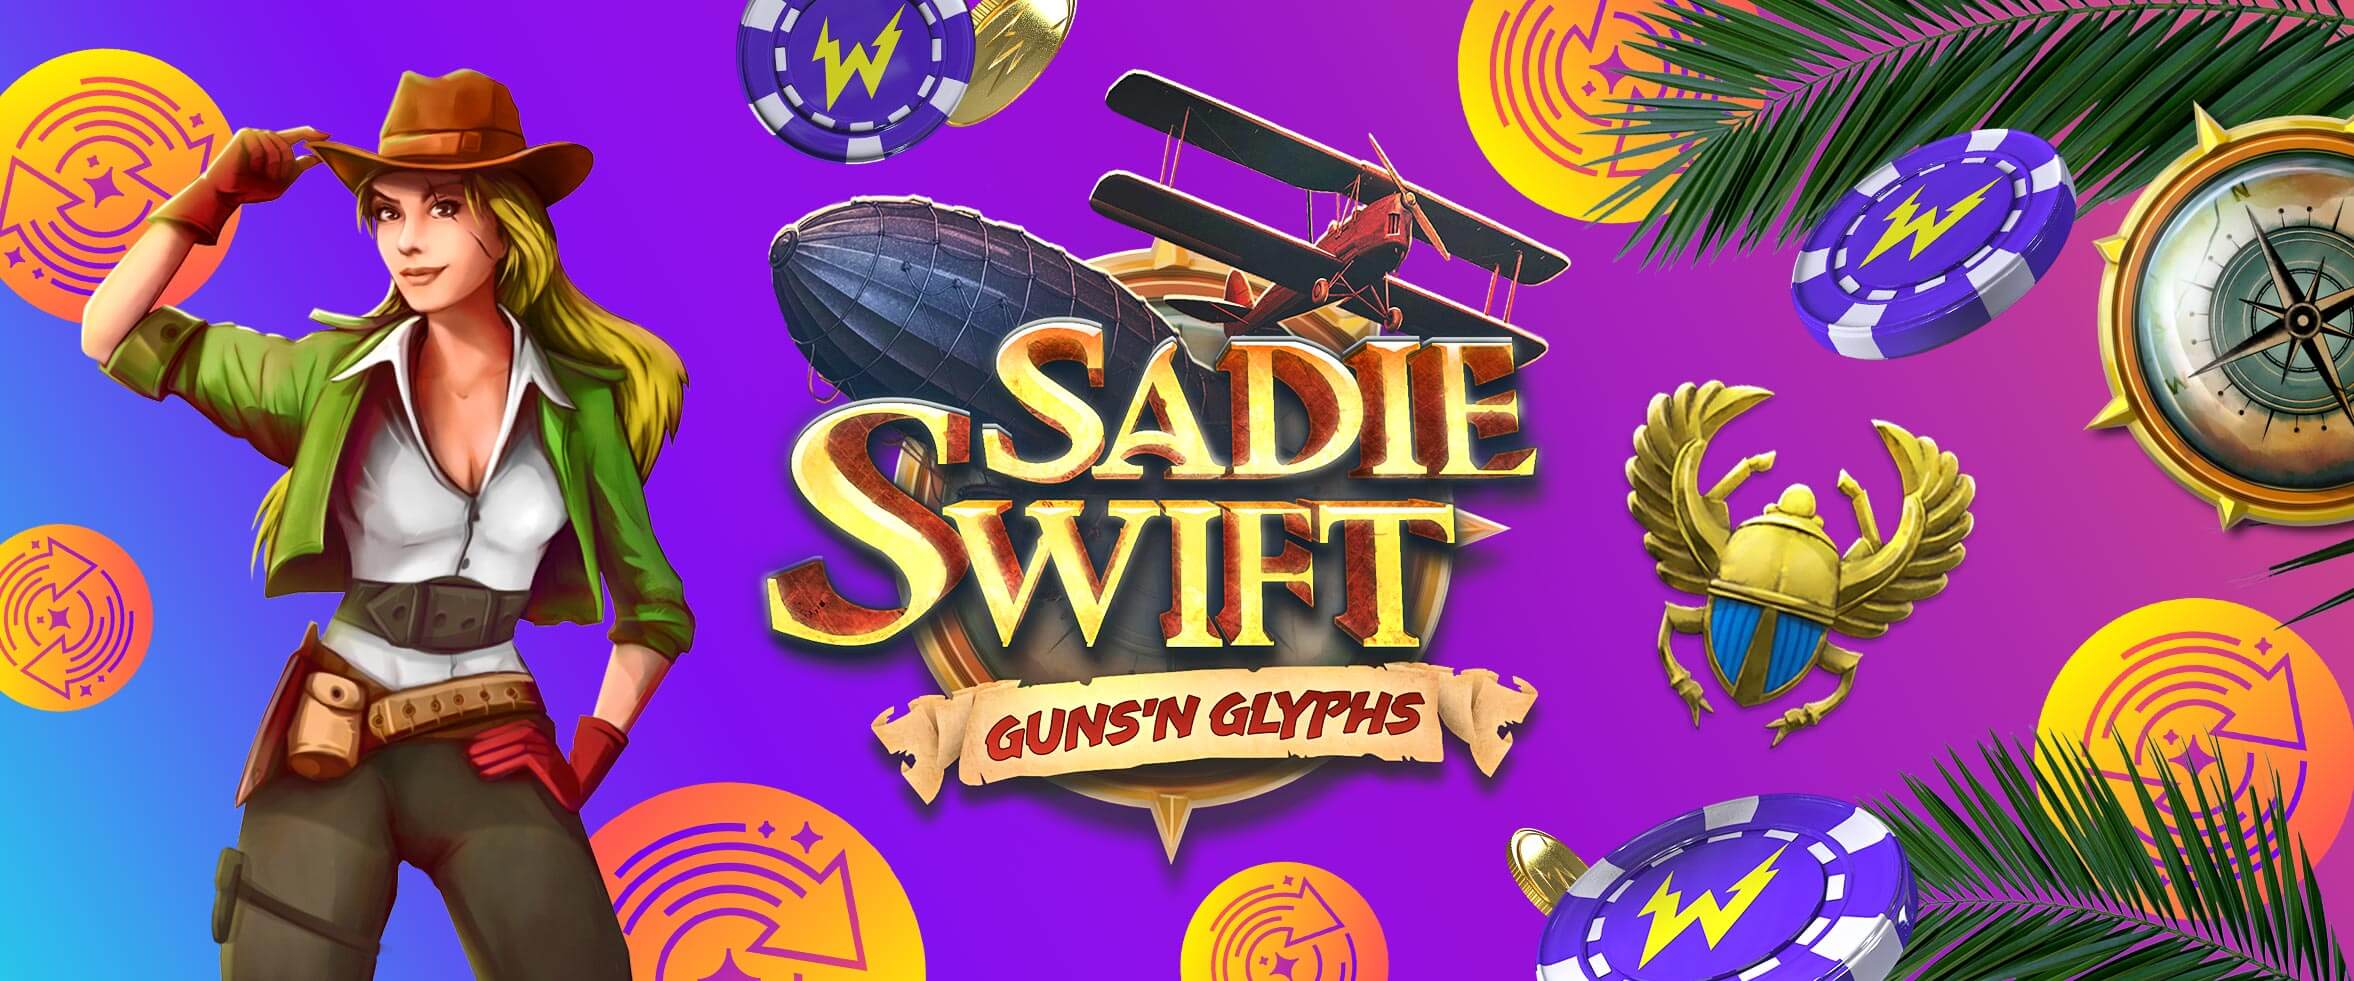 Sadie Swift: Guns ‘n Glyphs - New Slot from Kalamba